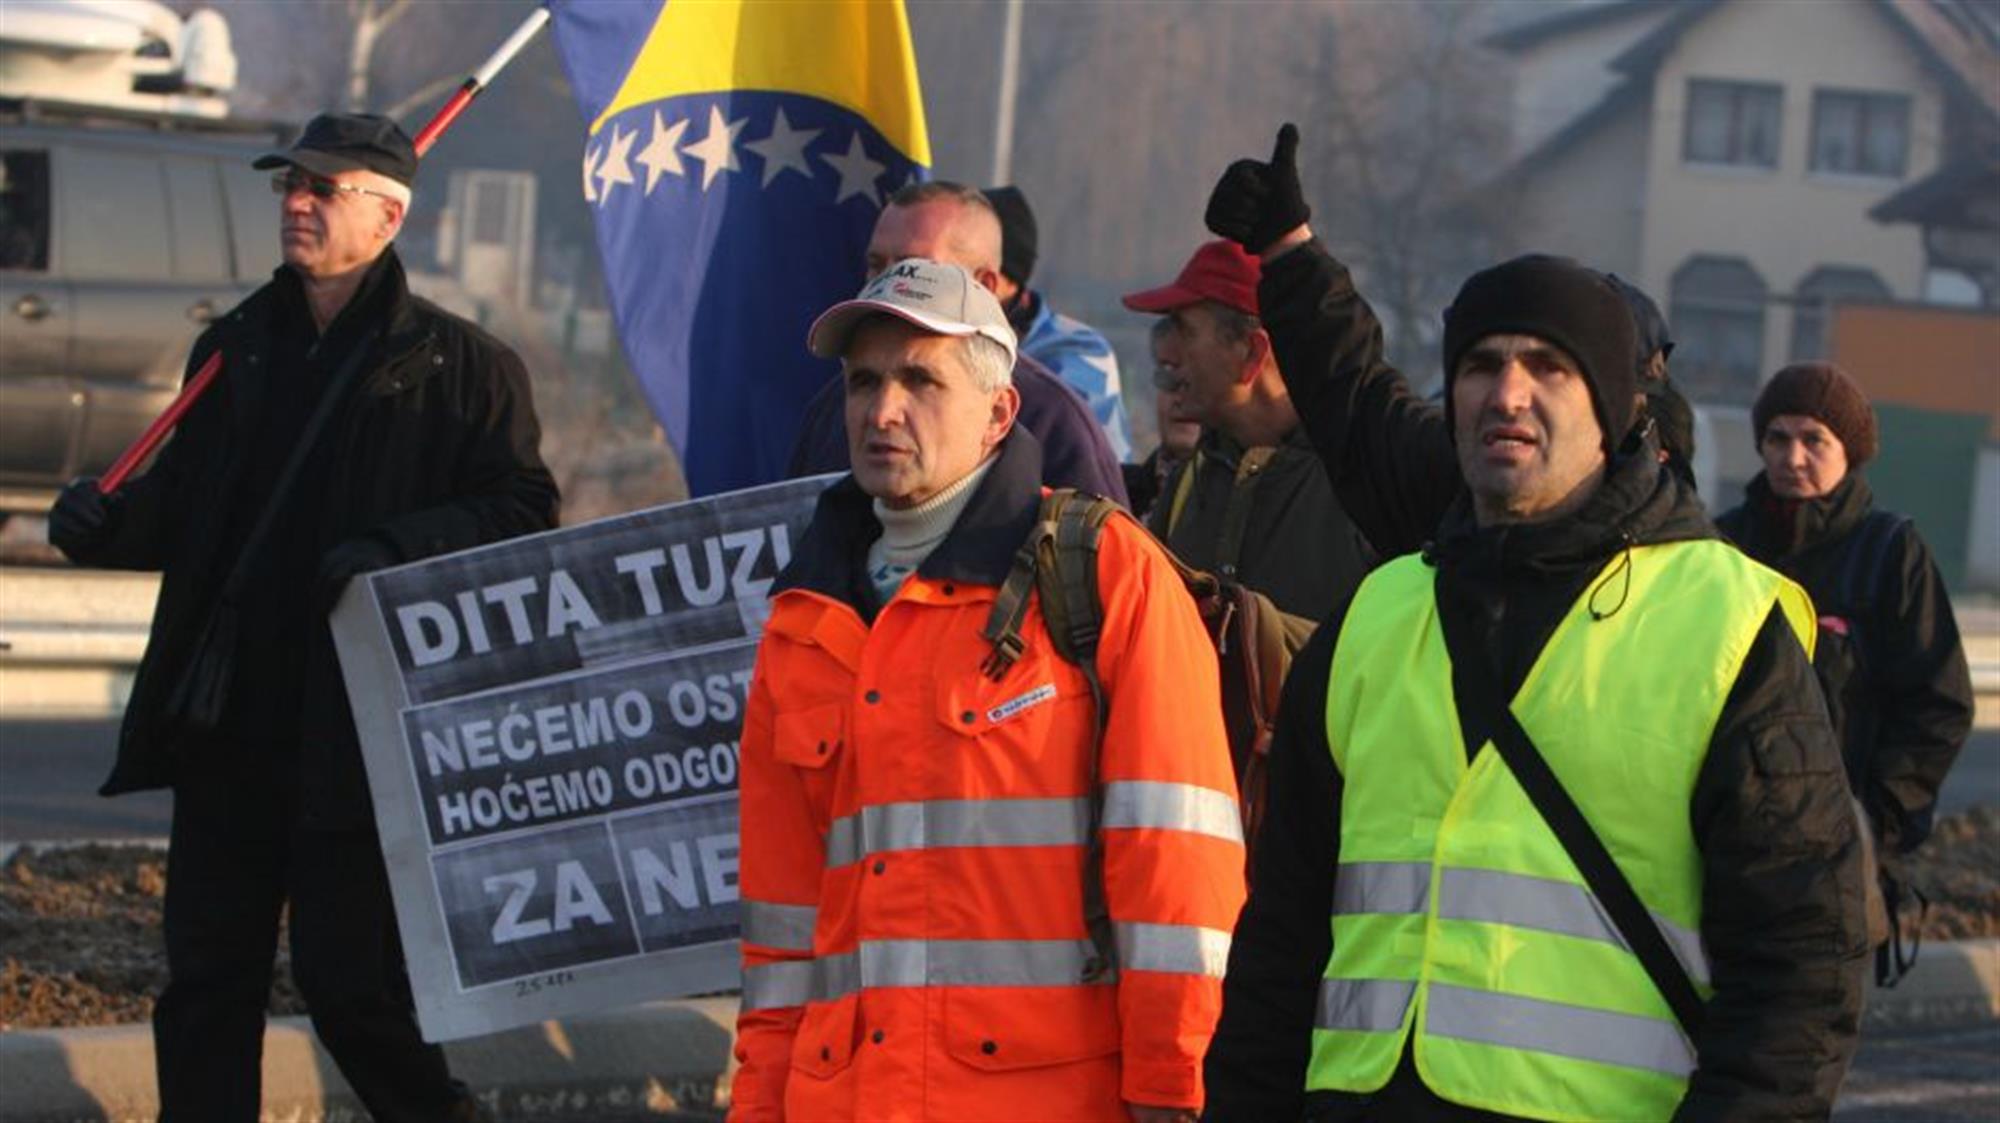 Saopštenje gradonačelnika Tuzle radnicima Dite, Aide, Livnice i Konjuha